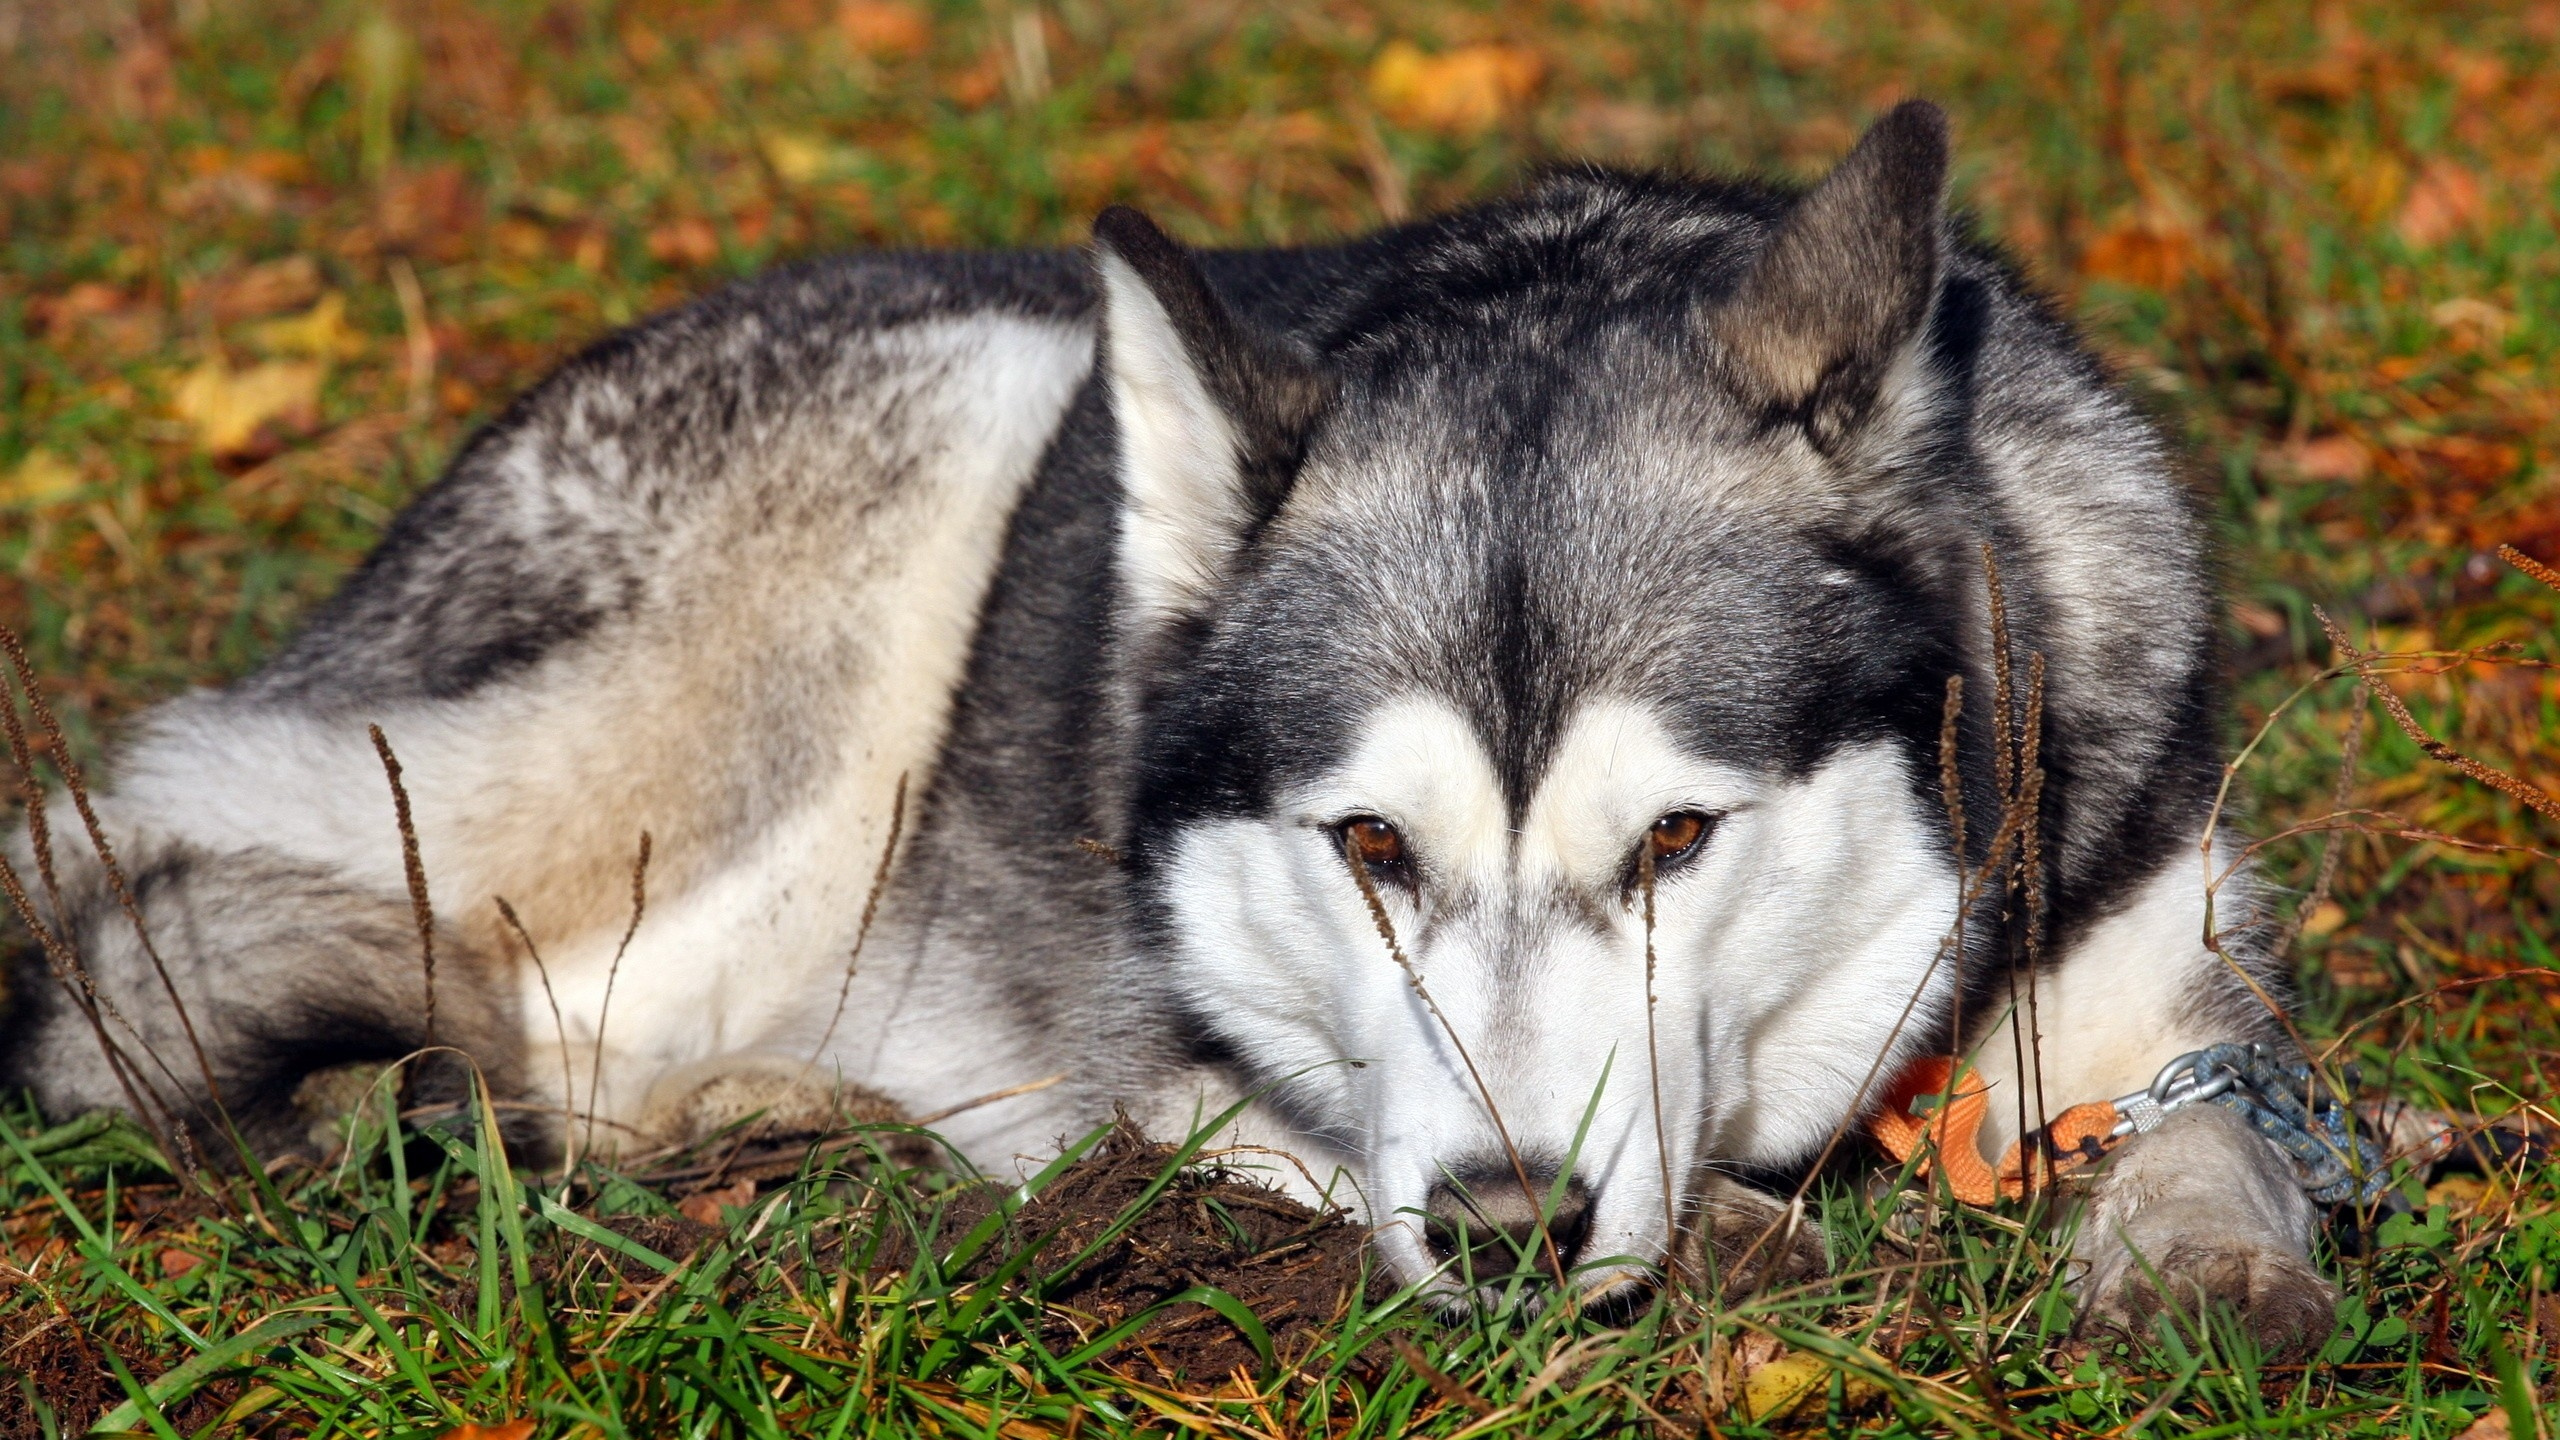 阿拉斯加雪橇犬, 阿拉斯加沙哑的, 小狗, Saarloos那只狼狗, 微型雪纳瑞 壁纸 2560x1440 允许